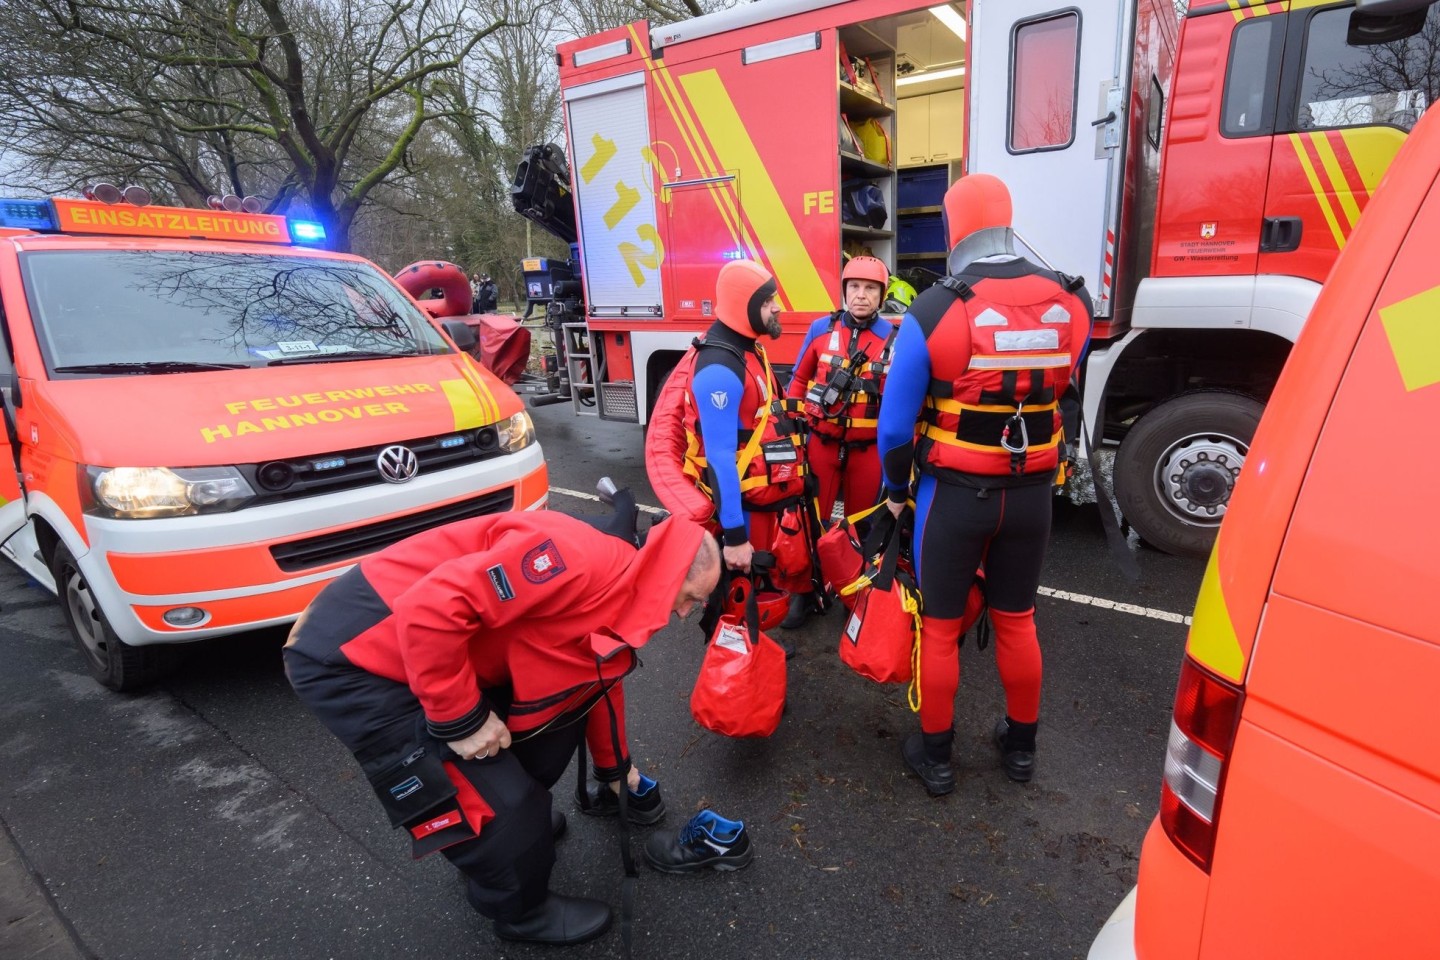 Einsatzkräfte der Wasserrettung der Feuerwehr Hannover auf einer überfluteten Straße zwischen Hannover und Hemmingen. Ein Mann war mit dem Fahrrad auf einer gesperrten Straße im tiefen W...